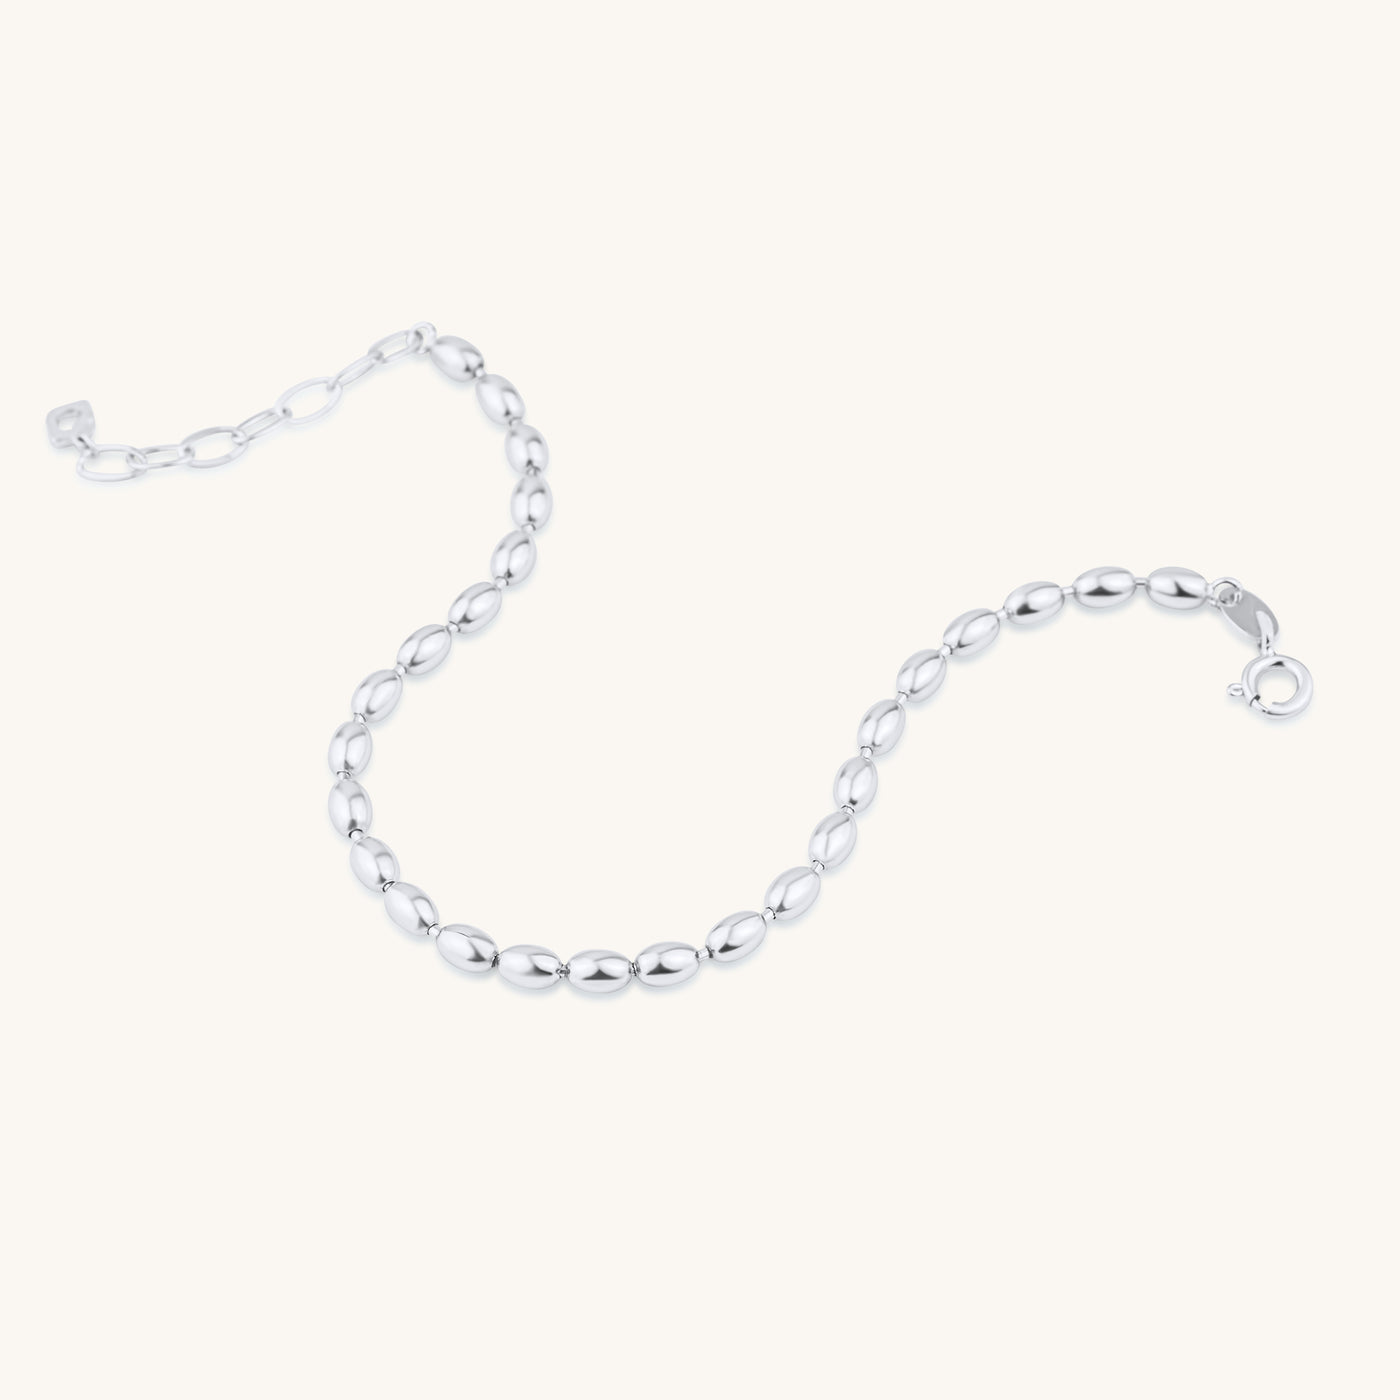 Modern Simple Minimalist Jewelry Women's Bracelet 925 Sterling Silver Oval Bead Chain